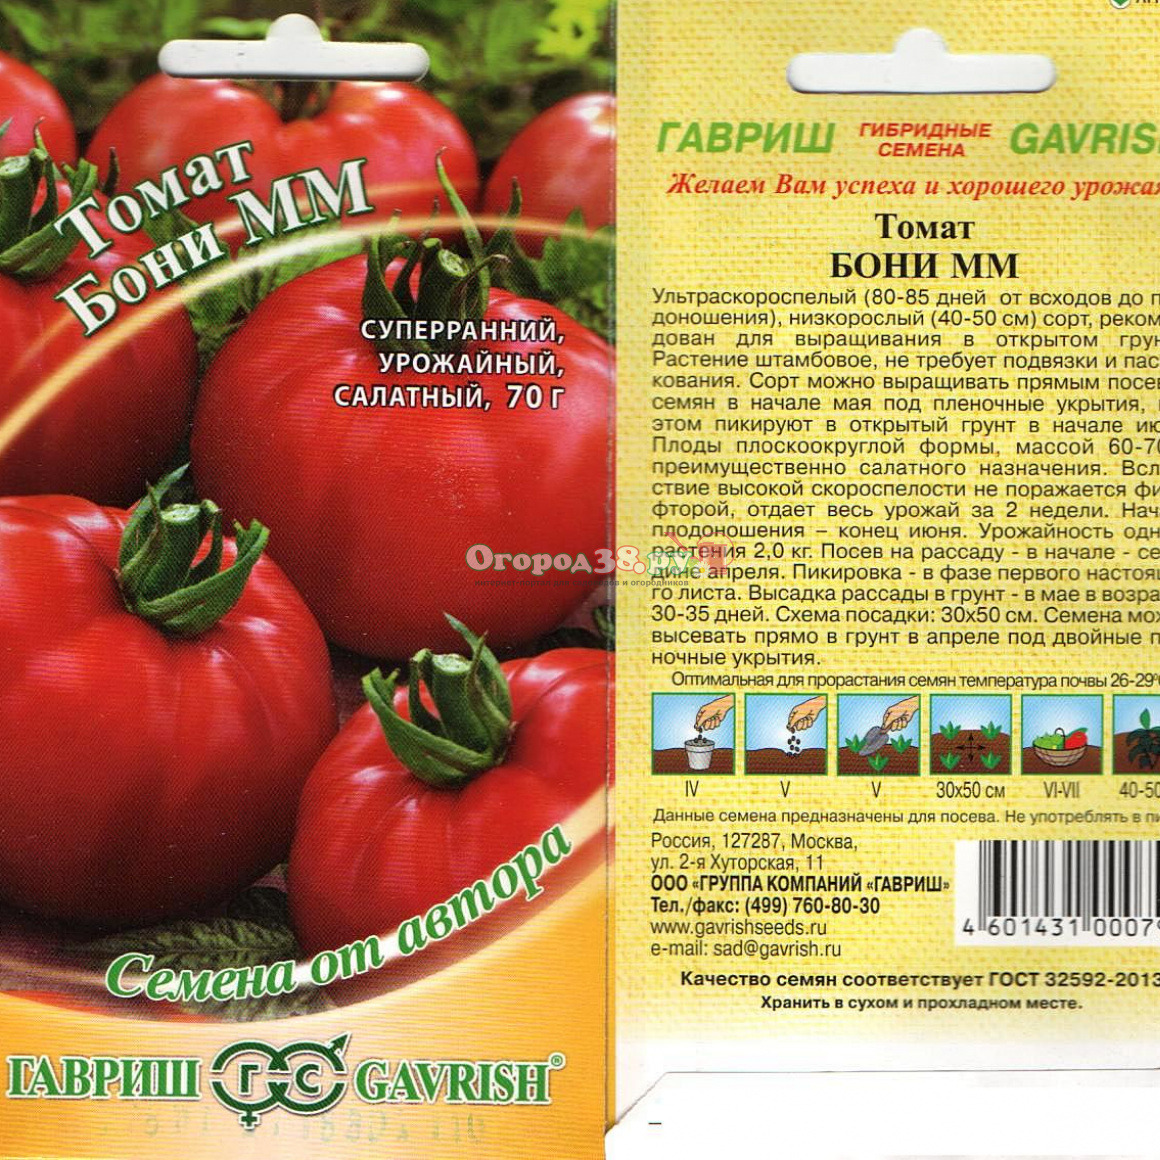 Синие помидоры, или анто-томаты — экзотические и очень полезные